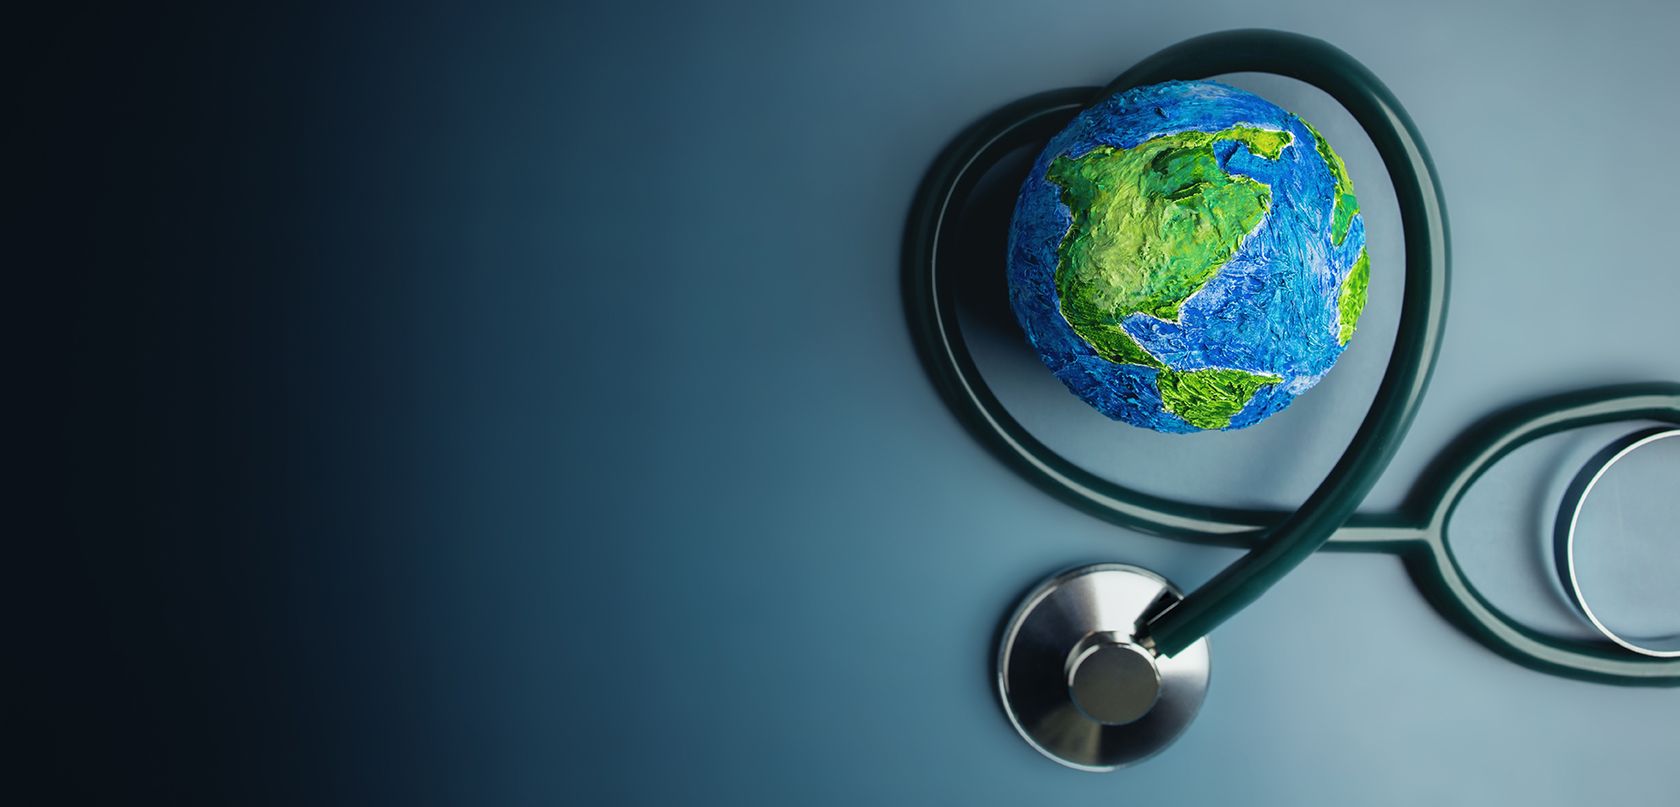 Globus-Modell mit Stethoskop drumherum als Symbol für Nachhaltigkeit in der Medizin.